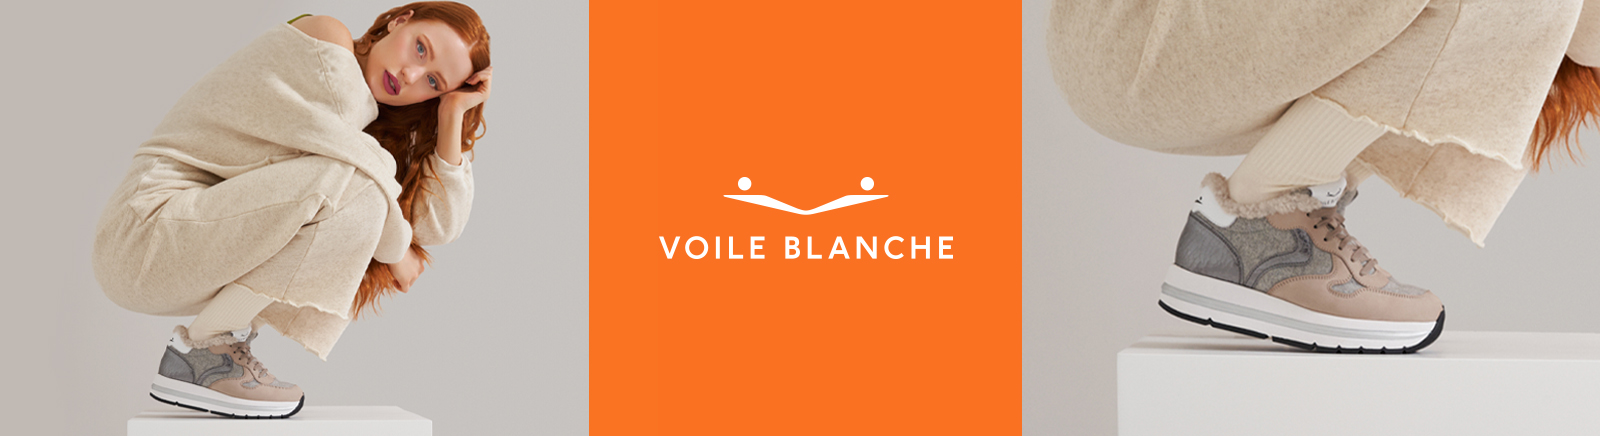 Voile Blanche Schnürschuhe für Herren im Online-Shop von GISY kaufen